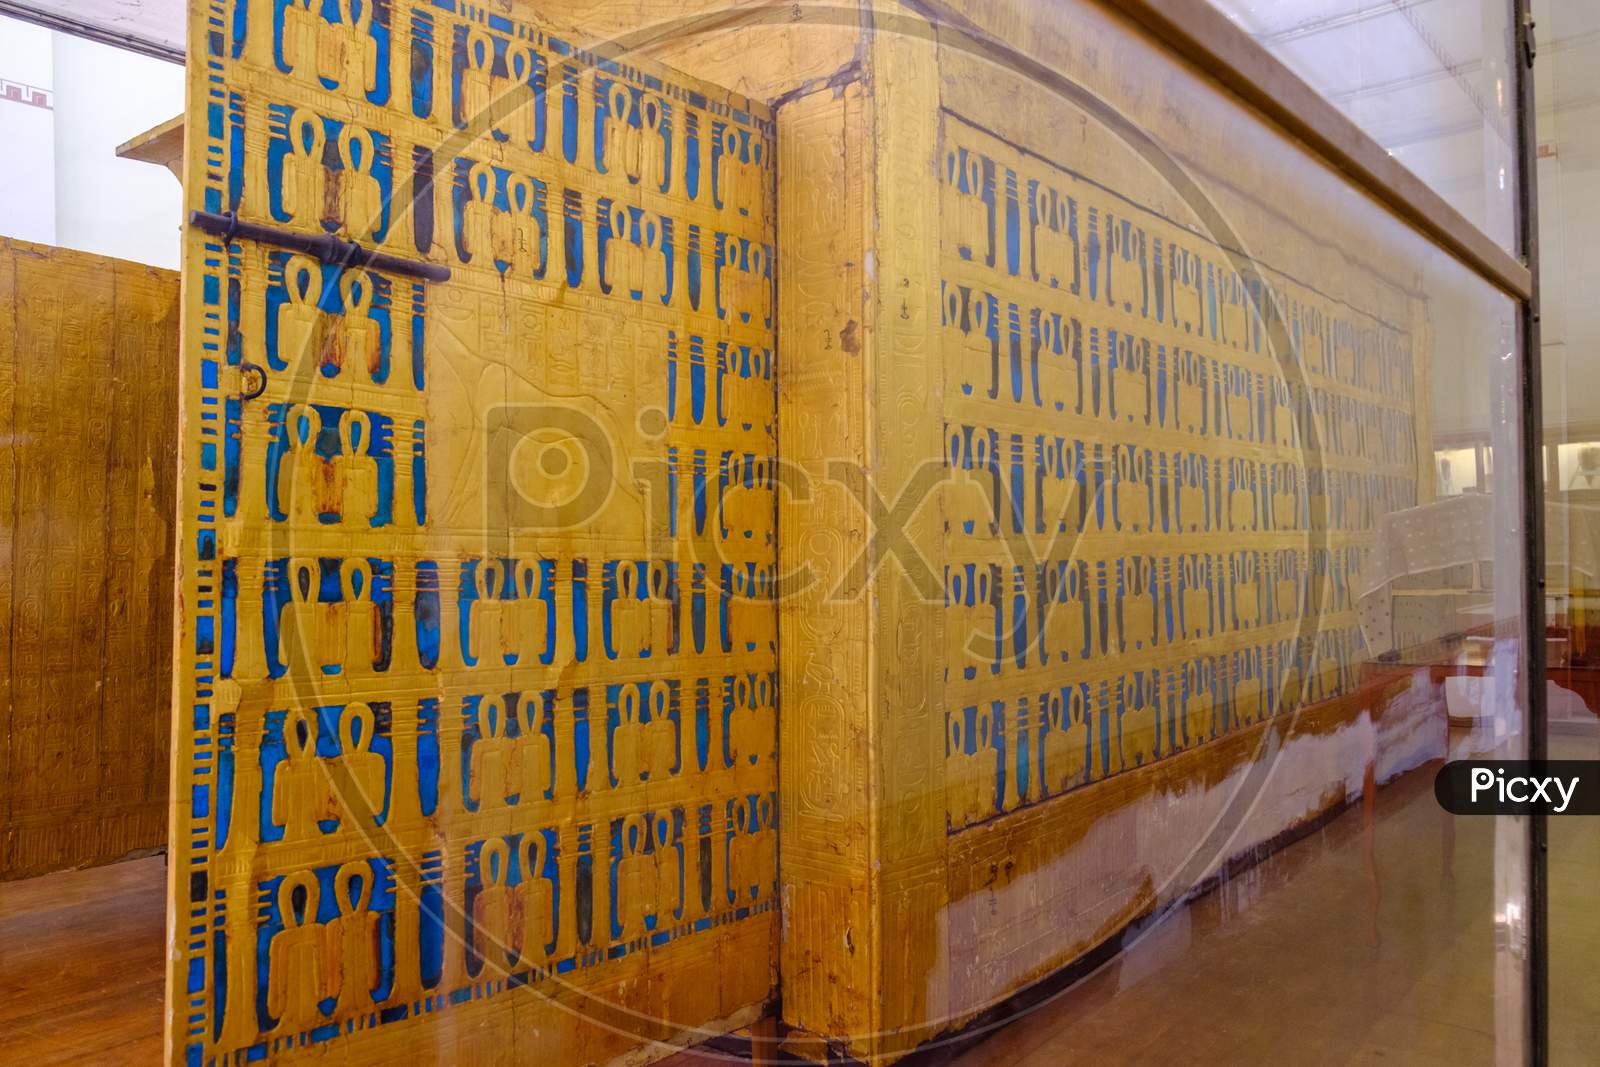 The Outer Golden Shrine Of Famous Egyptian Pharaoh Tutankhamun'S Burial Chamber In The Egyptian Museum